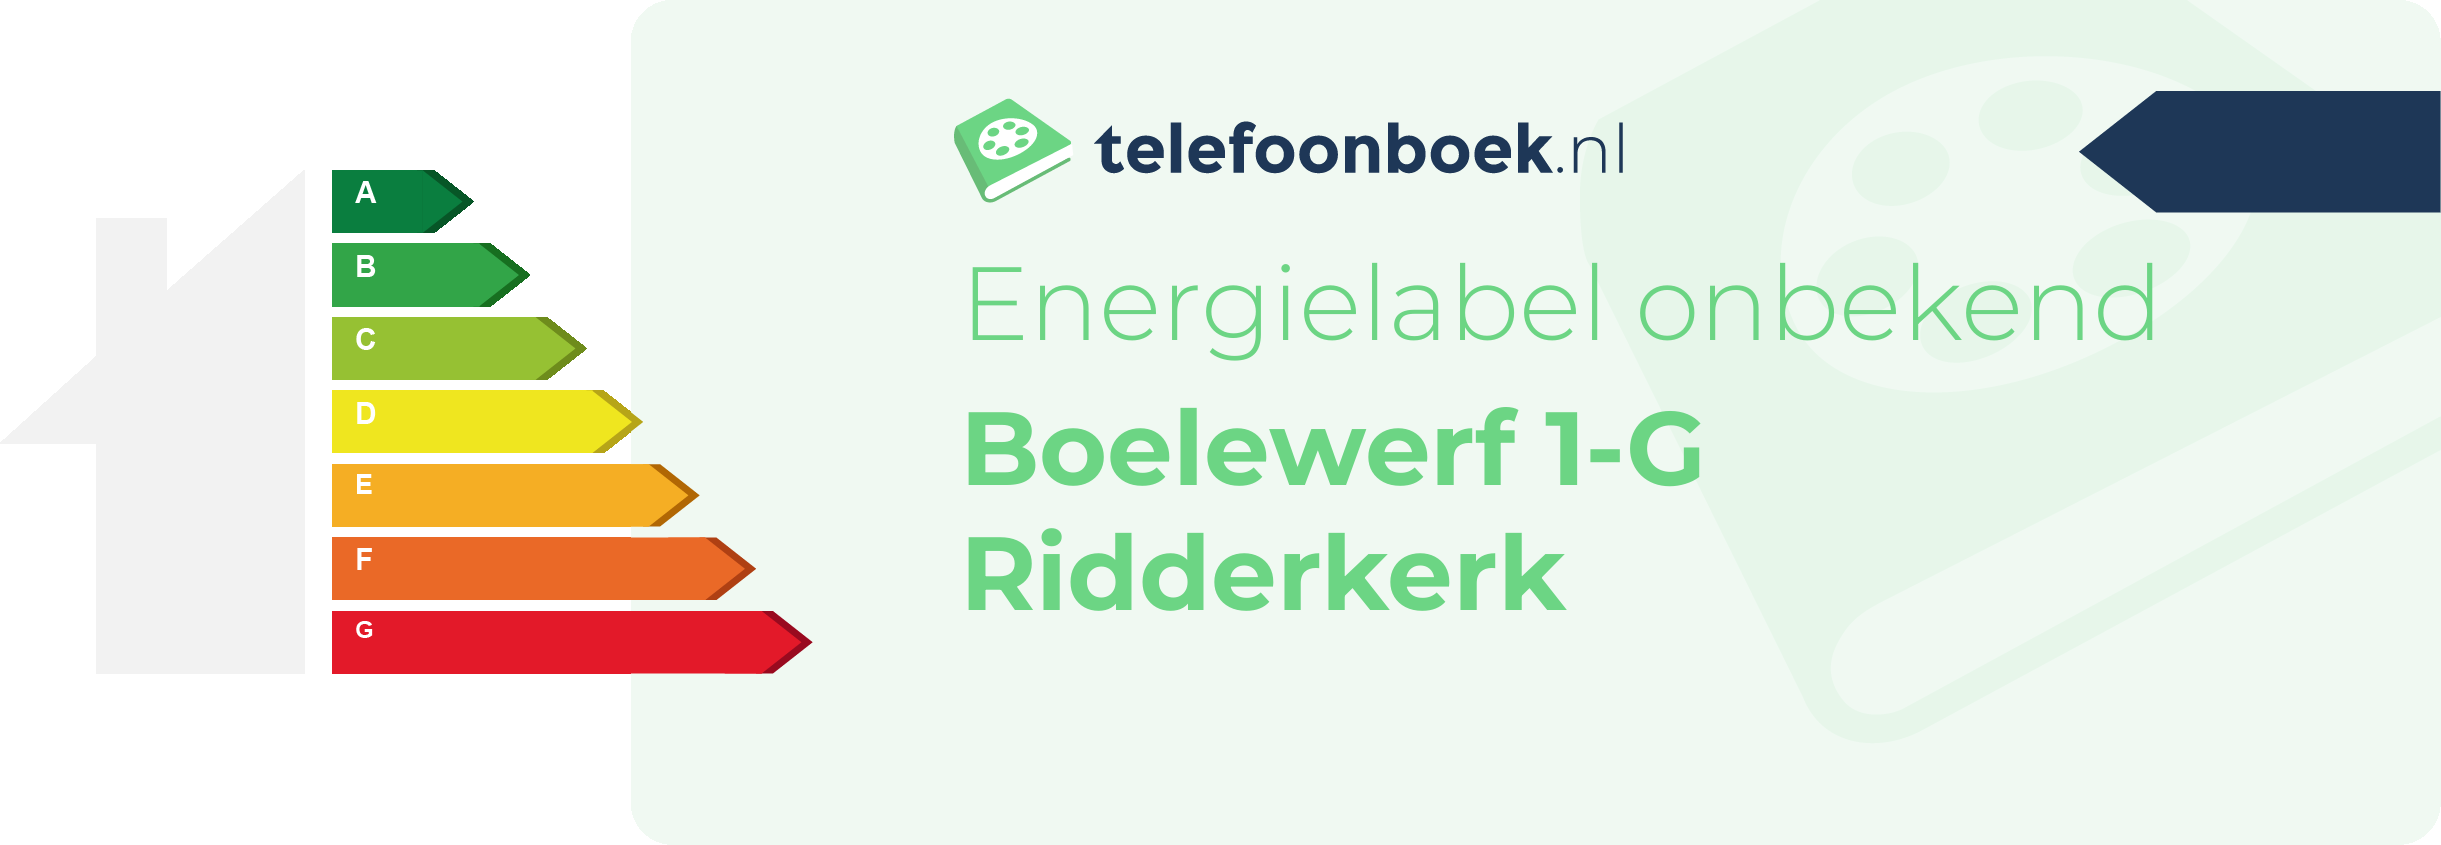 Energielabel Boelewerf 1-G Ridderkerk